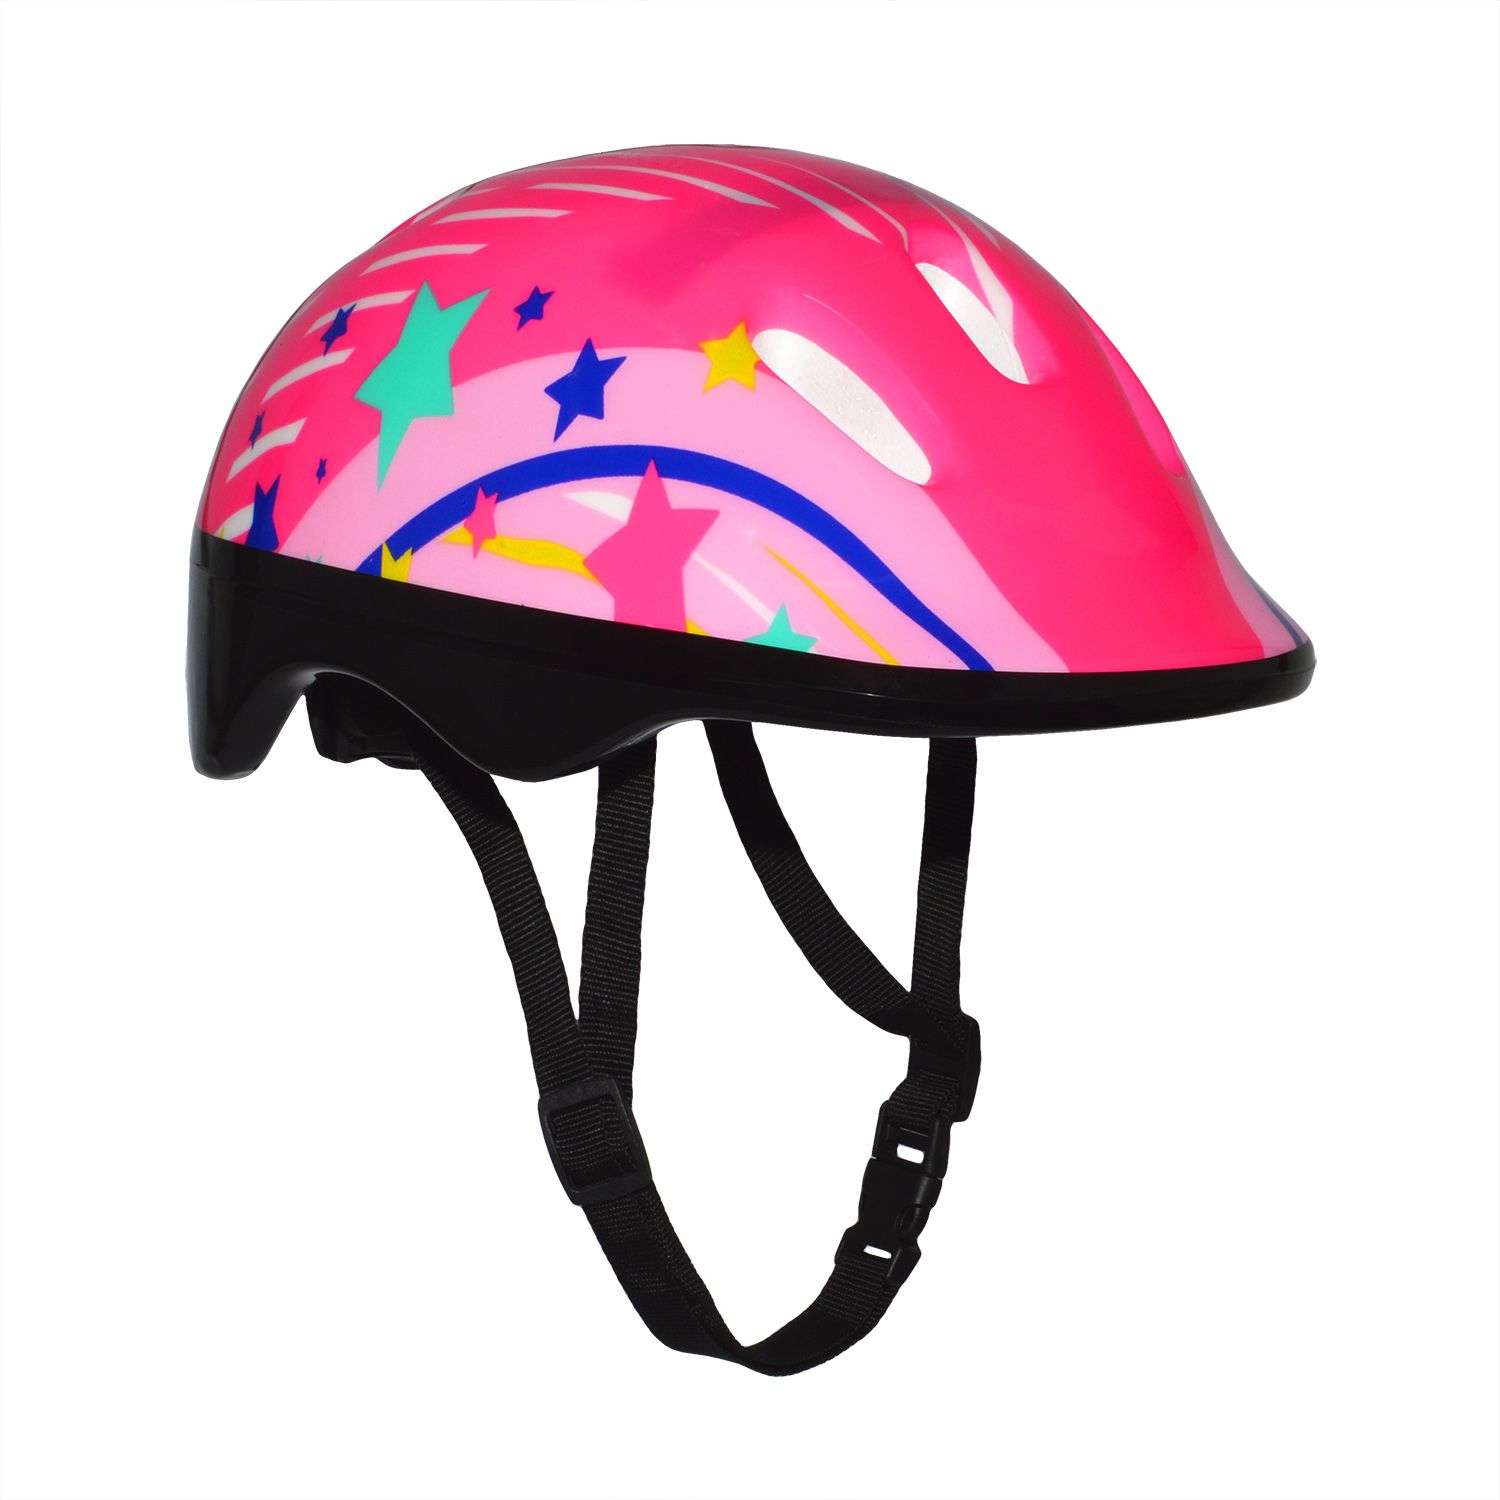 Роликовый комплект Sport Collection в сумке SET Festival Pink ролики р. 34-37 Шлем 50-56 Защита S/M - фото 4